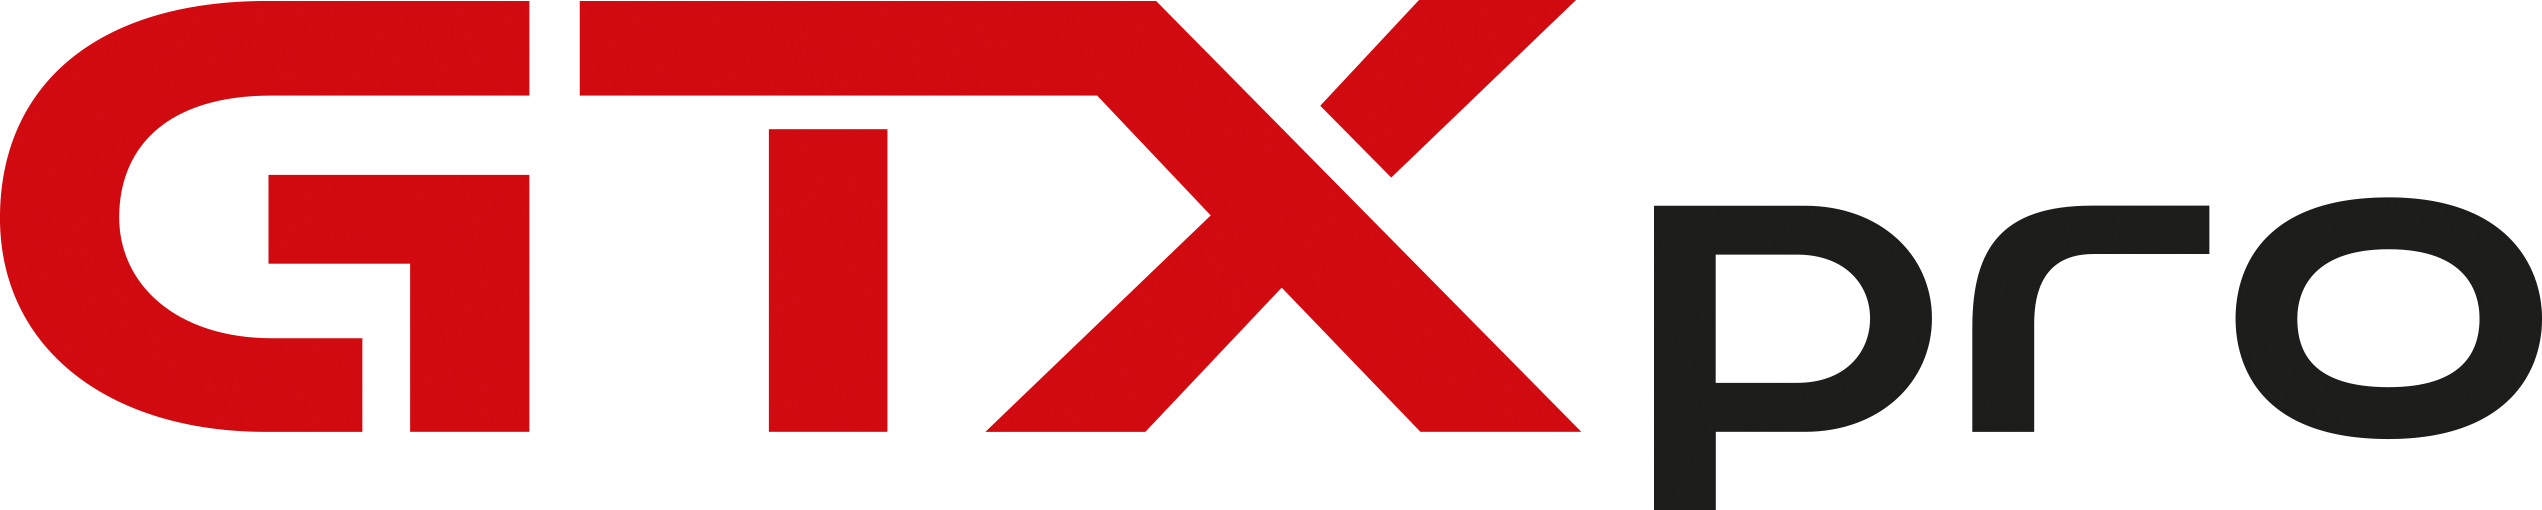 GTXpro_Logo_for_light_background